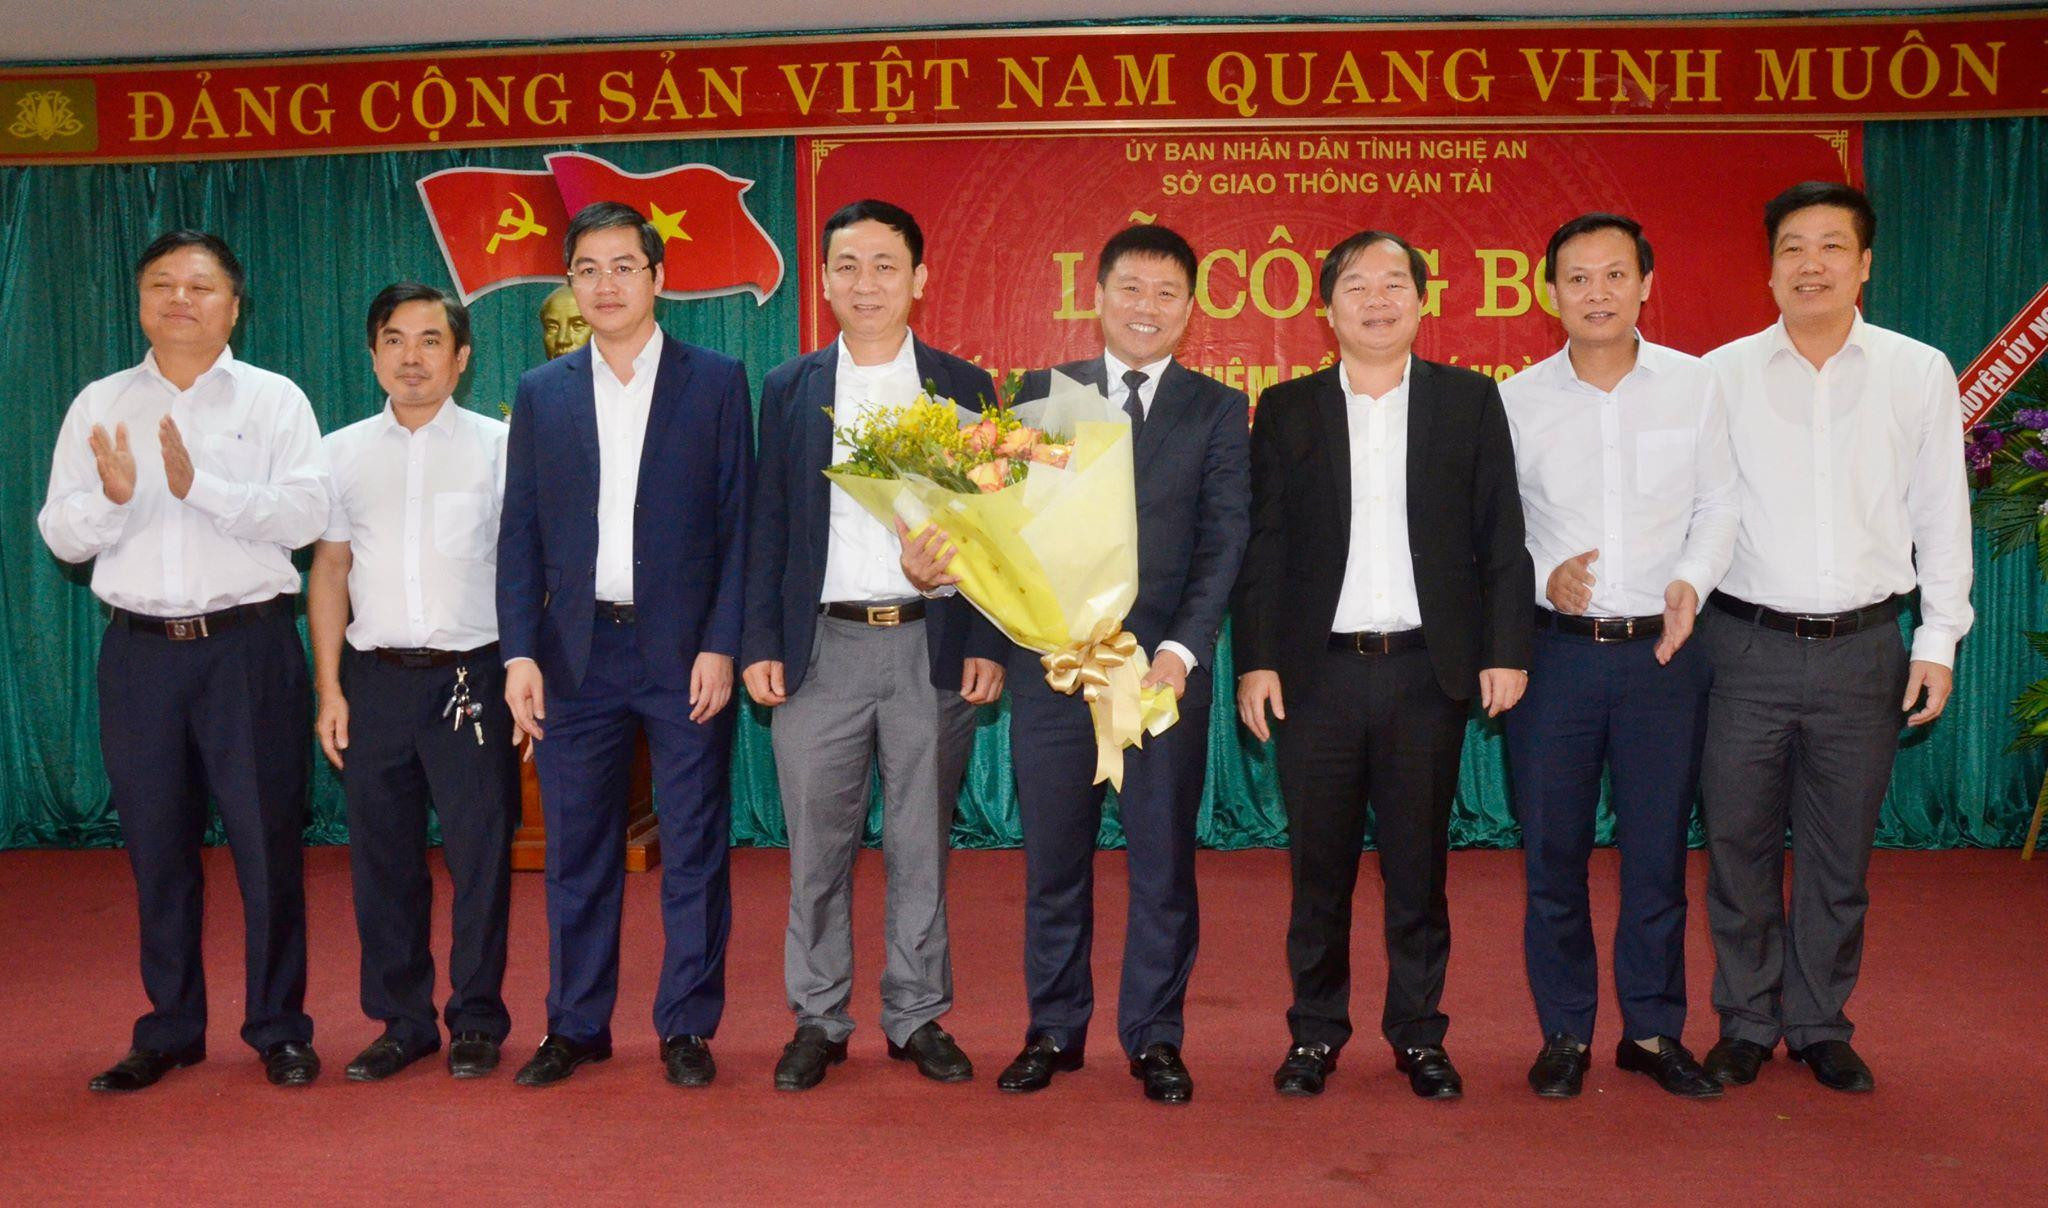 Lãnh đạo Sở GTVT tặng hoa chúc mừng đồng chí Hoàng Phú Hiền.Ảnh: Thanh lê